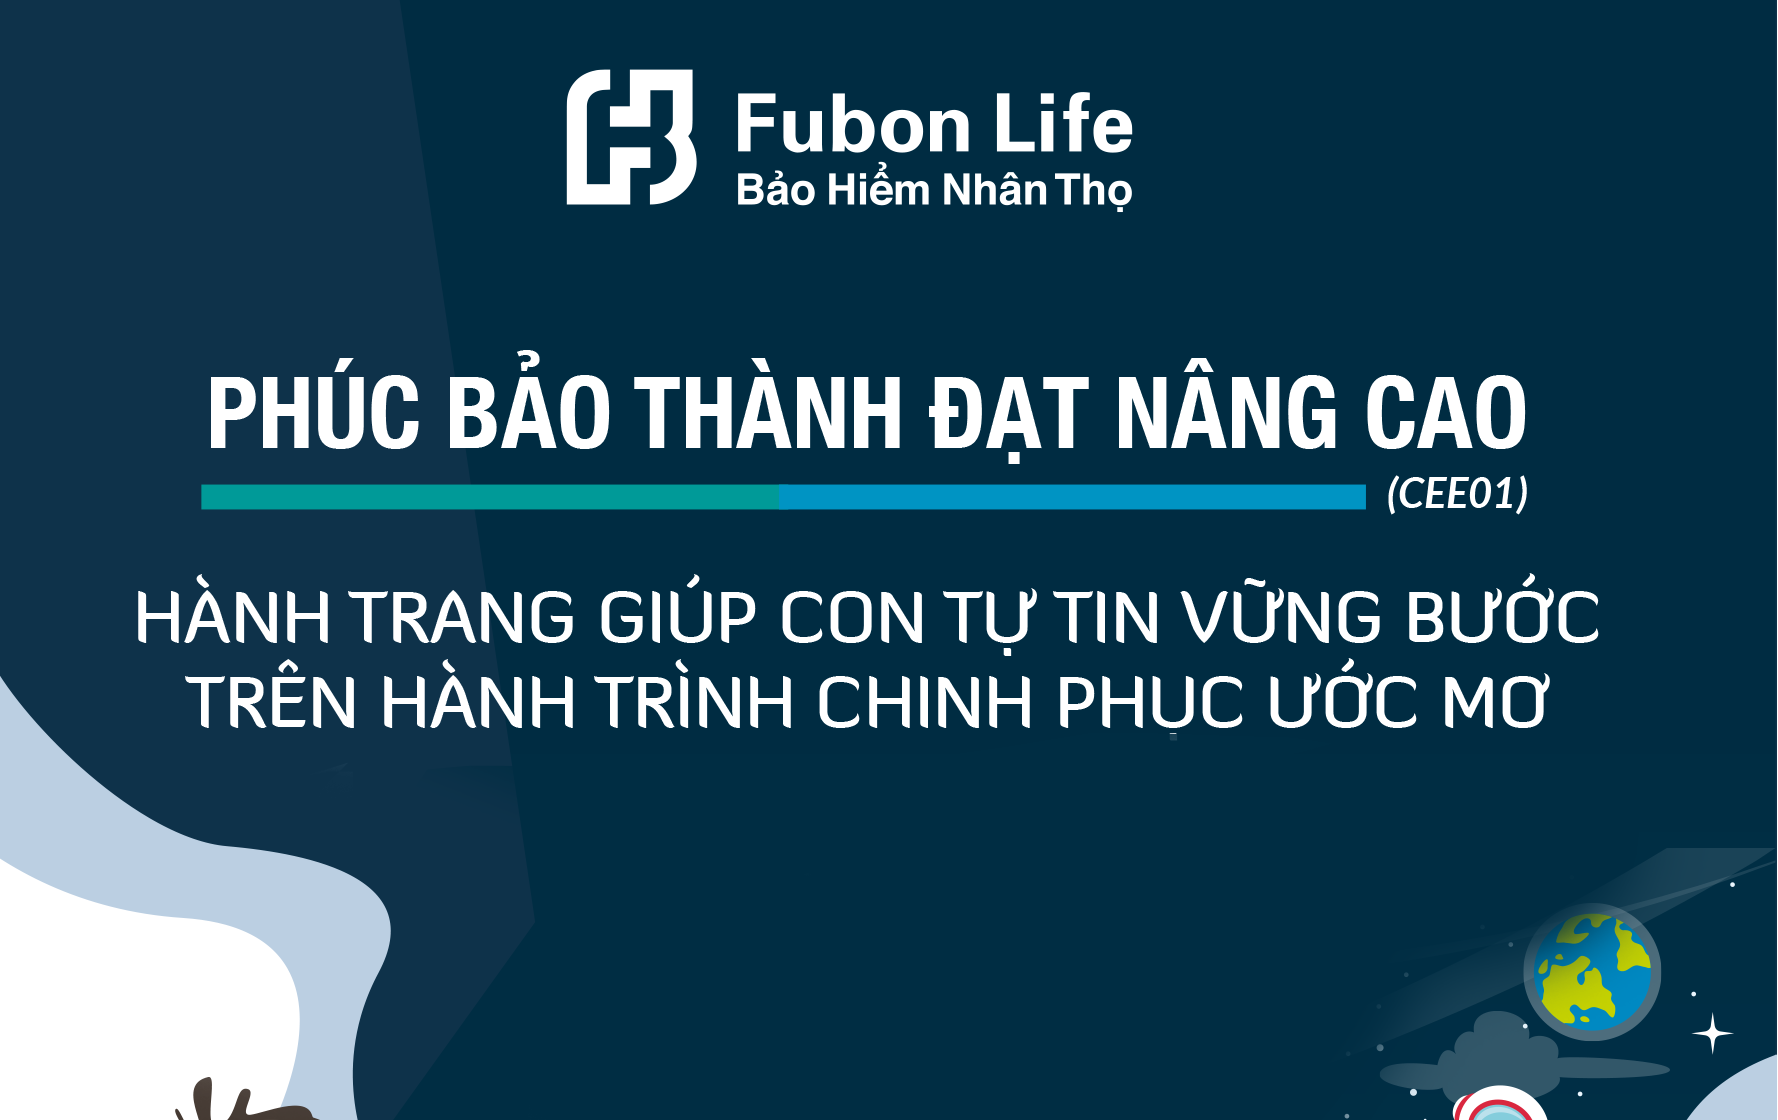 Fubon Life Việt Nam ra mắt sản phẩm mới nâng cao quyền lợi tới 275%